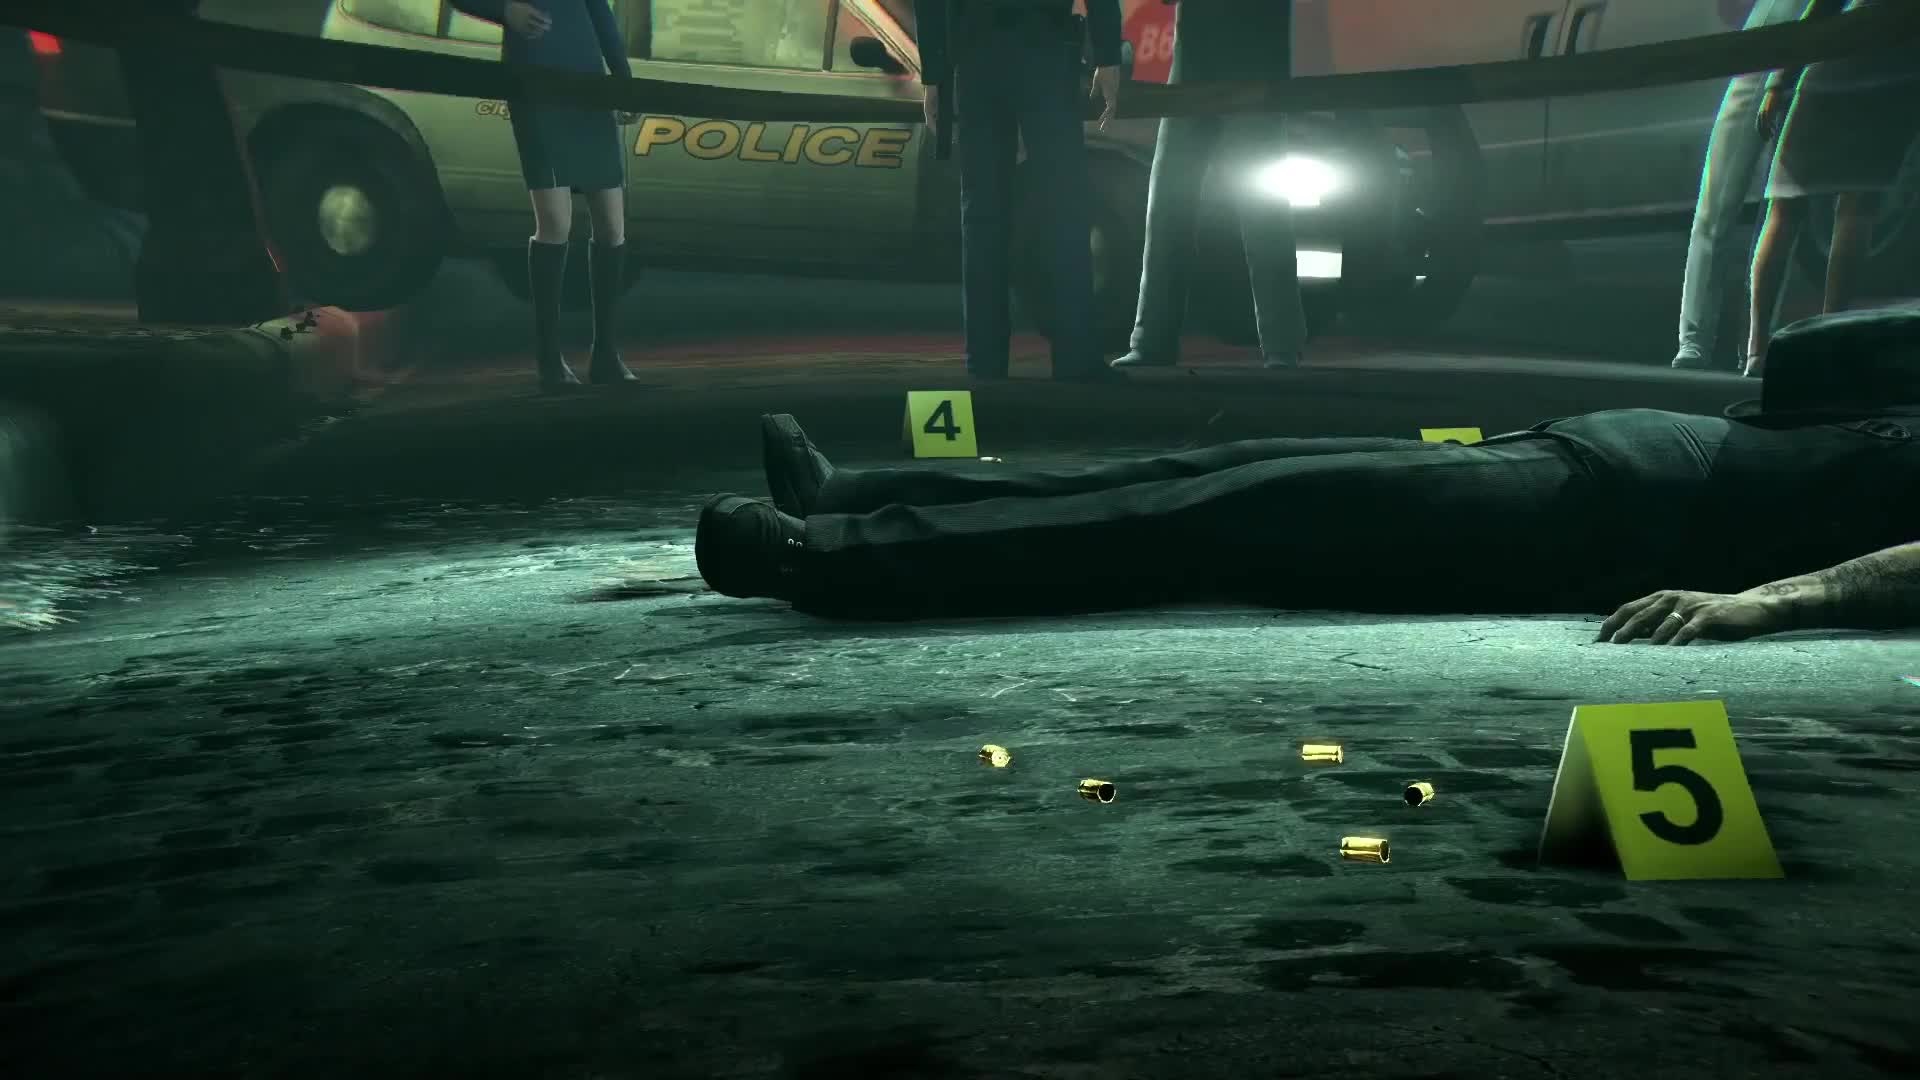 Murdered: Souls Suspect - 101 trailer 